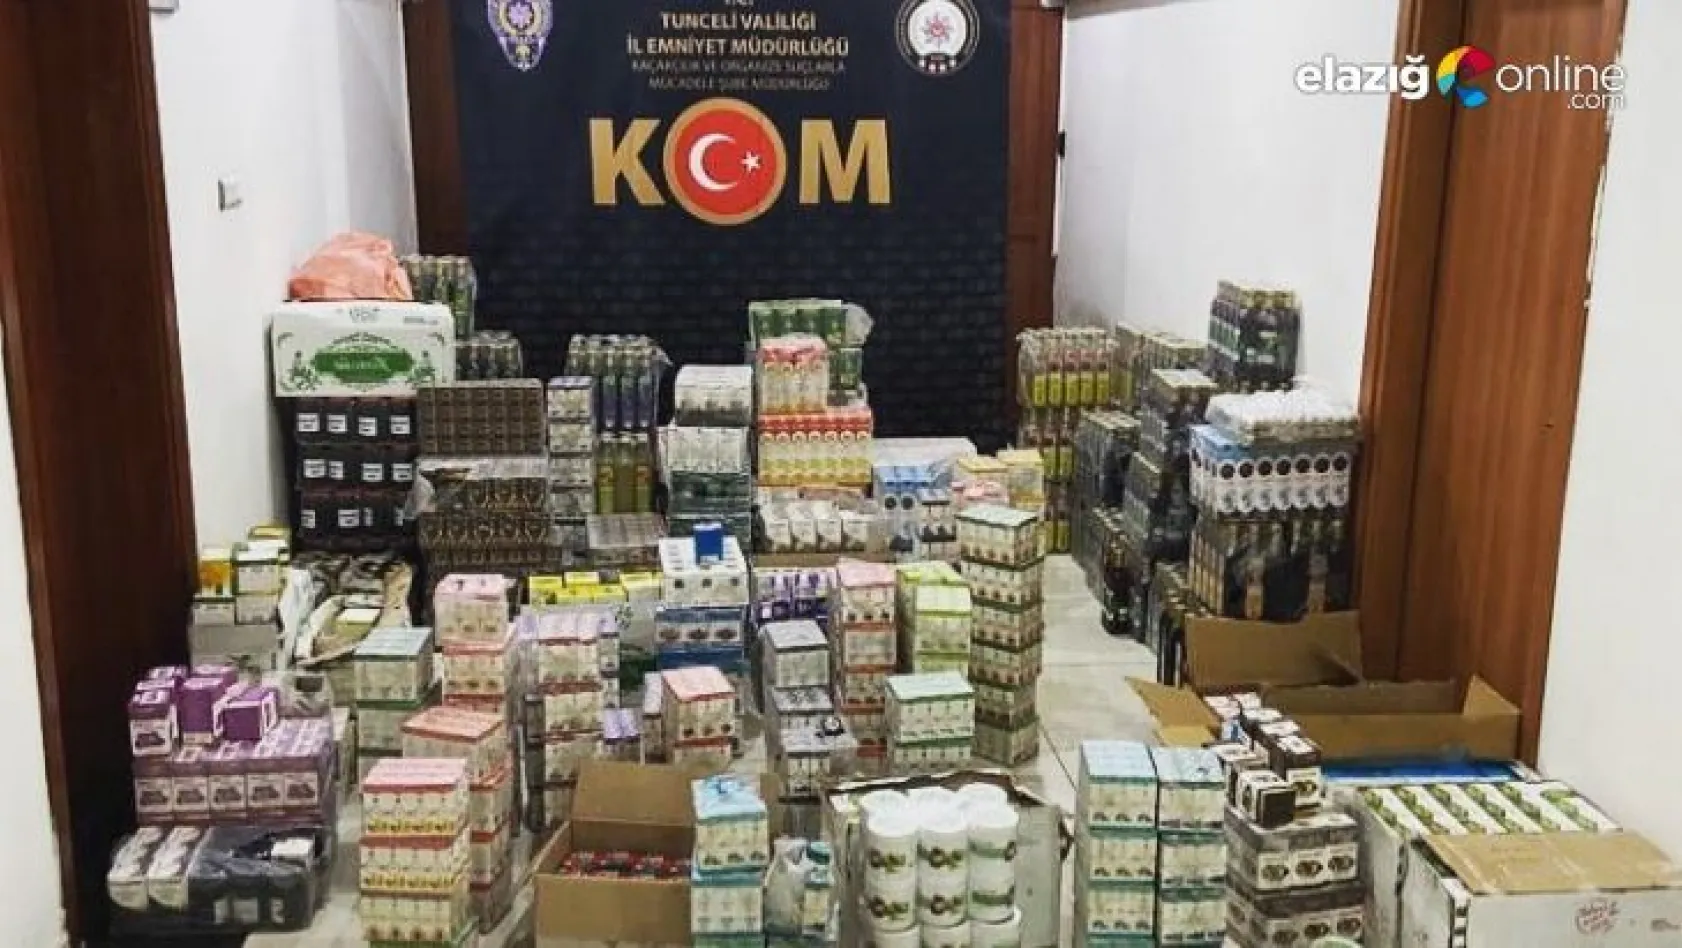 Tunceli'de binlerce kaçak cinsel içerikli ürün ele geçirildi